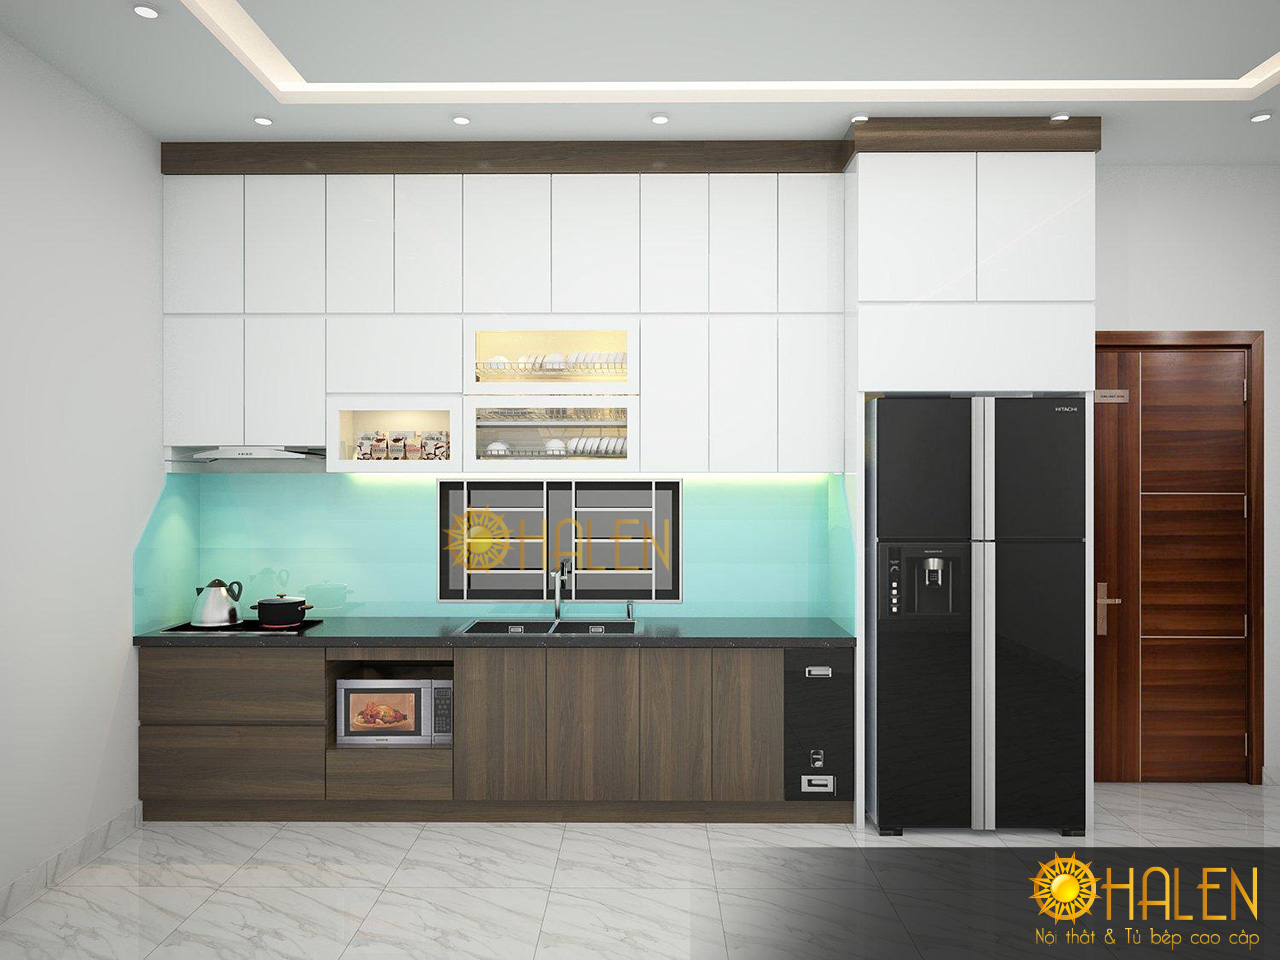 Tủ bếp Laminate 2021 hình chữ i đơn giản, hiện đại và tiện nghi không giờ bị lỗi mốt